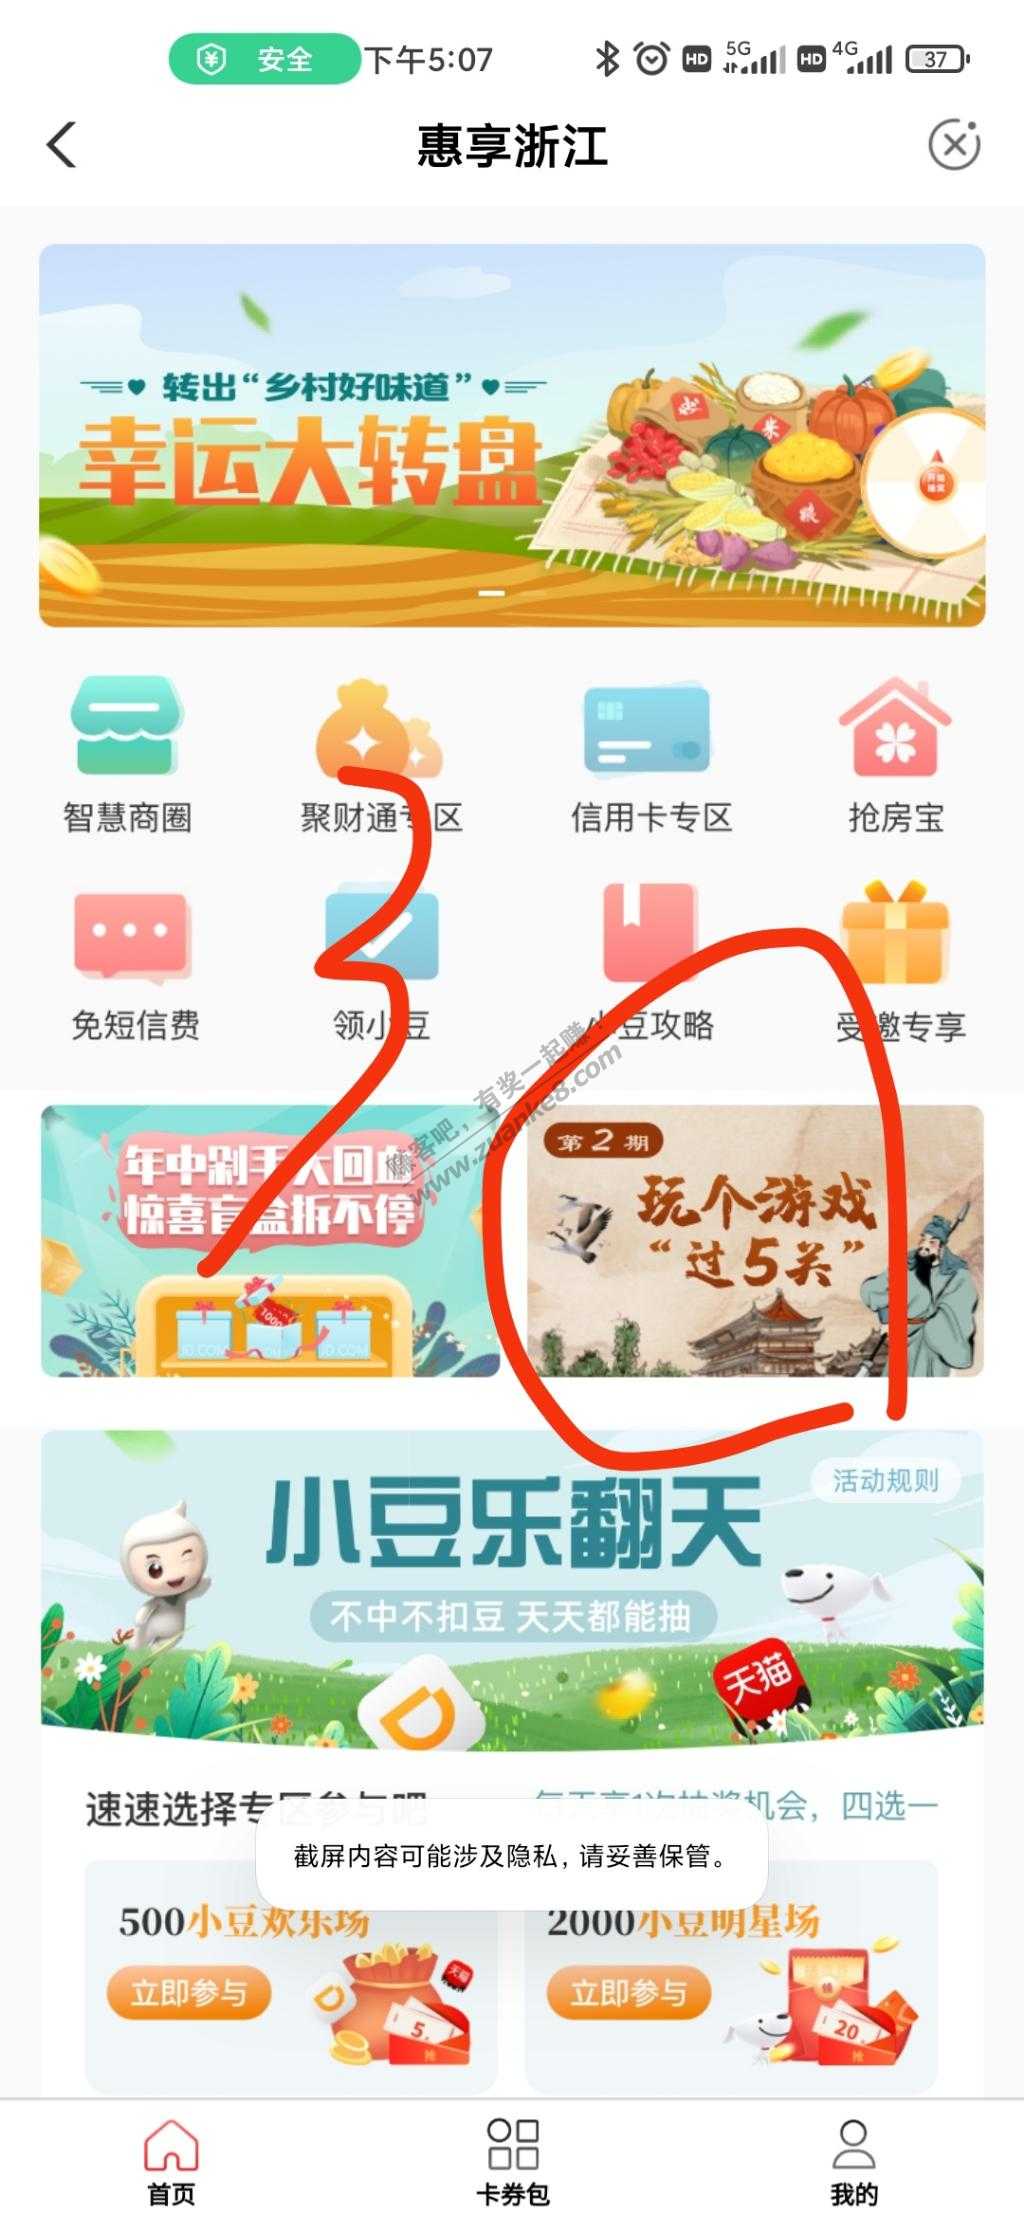 浙江农行闯关活动探讨下步骤-惠小助(52huixz.com)